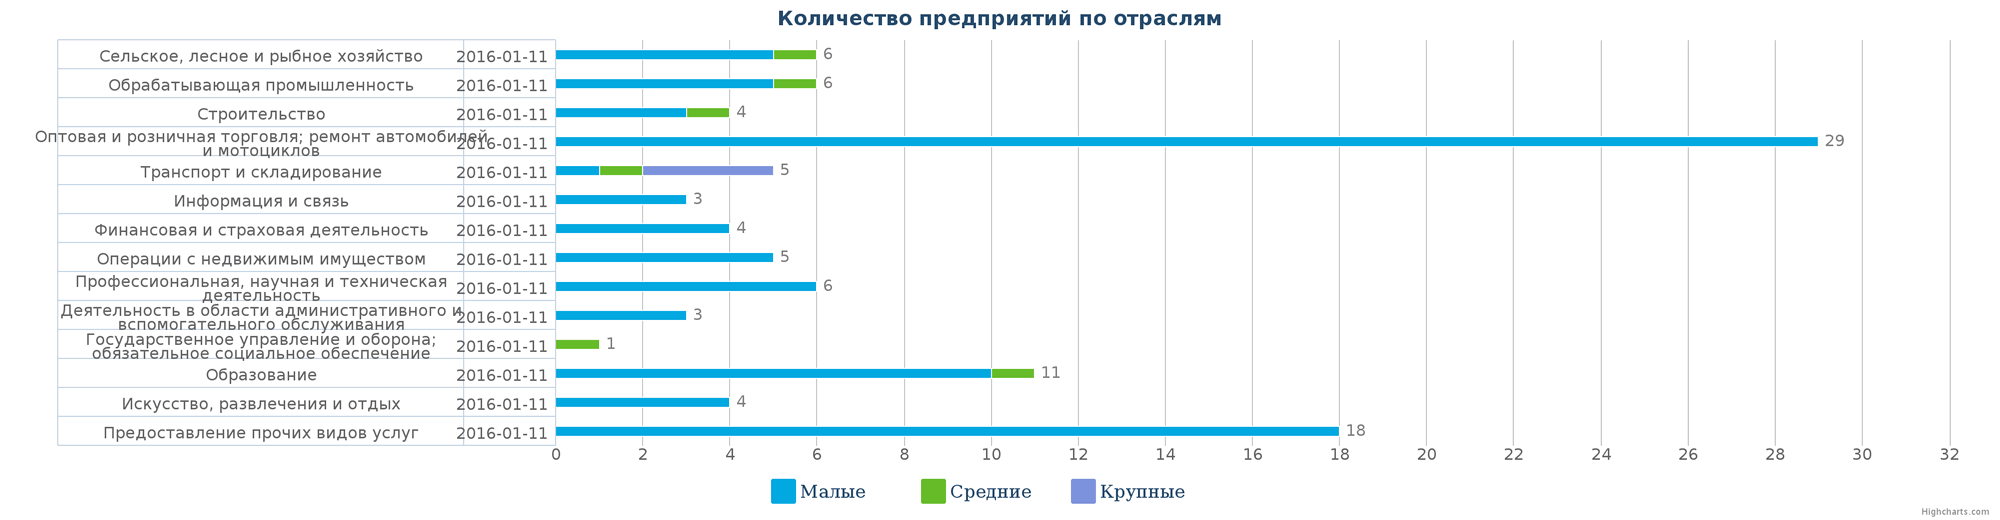 Количество ликвидированных организаций в базе Казахстана по отраслям